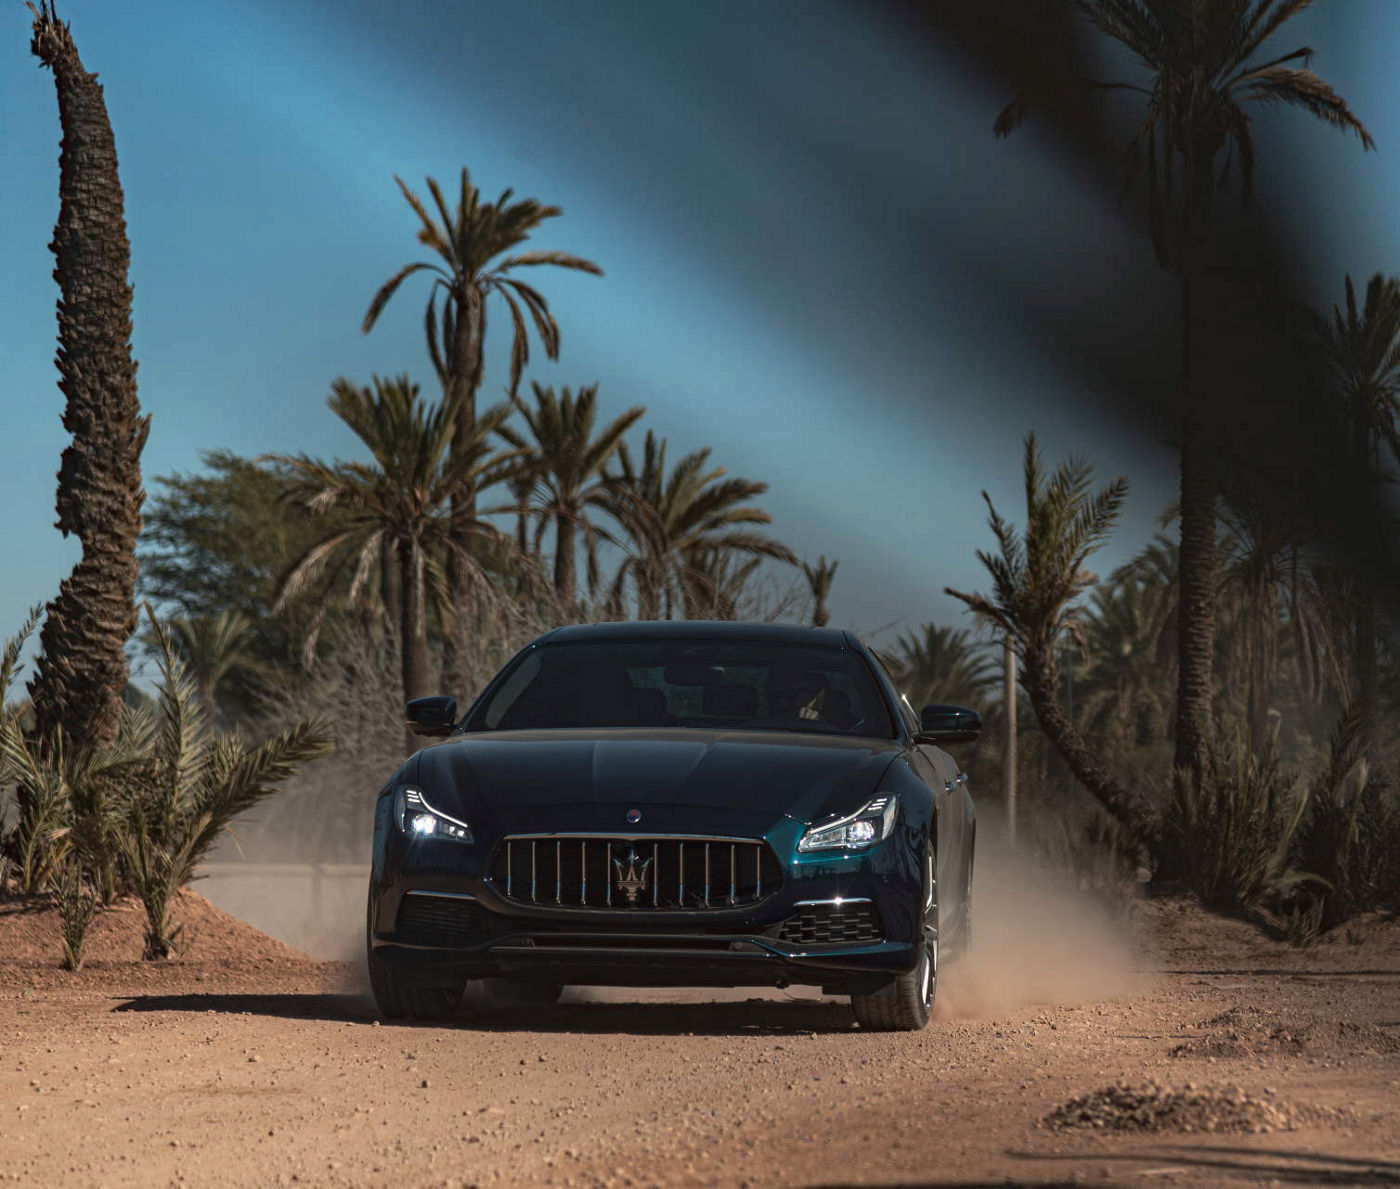 Maserati Royale en el desierto con palmas